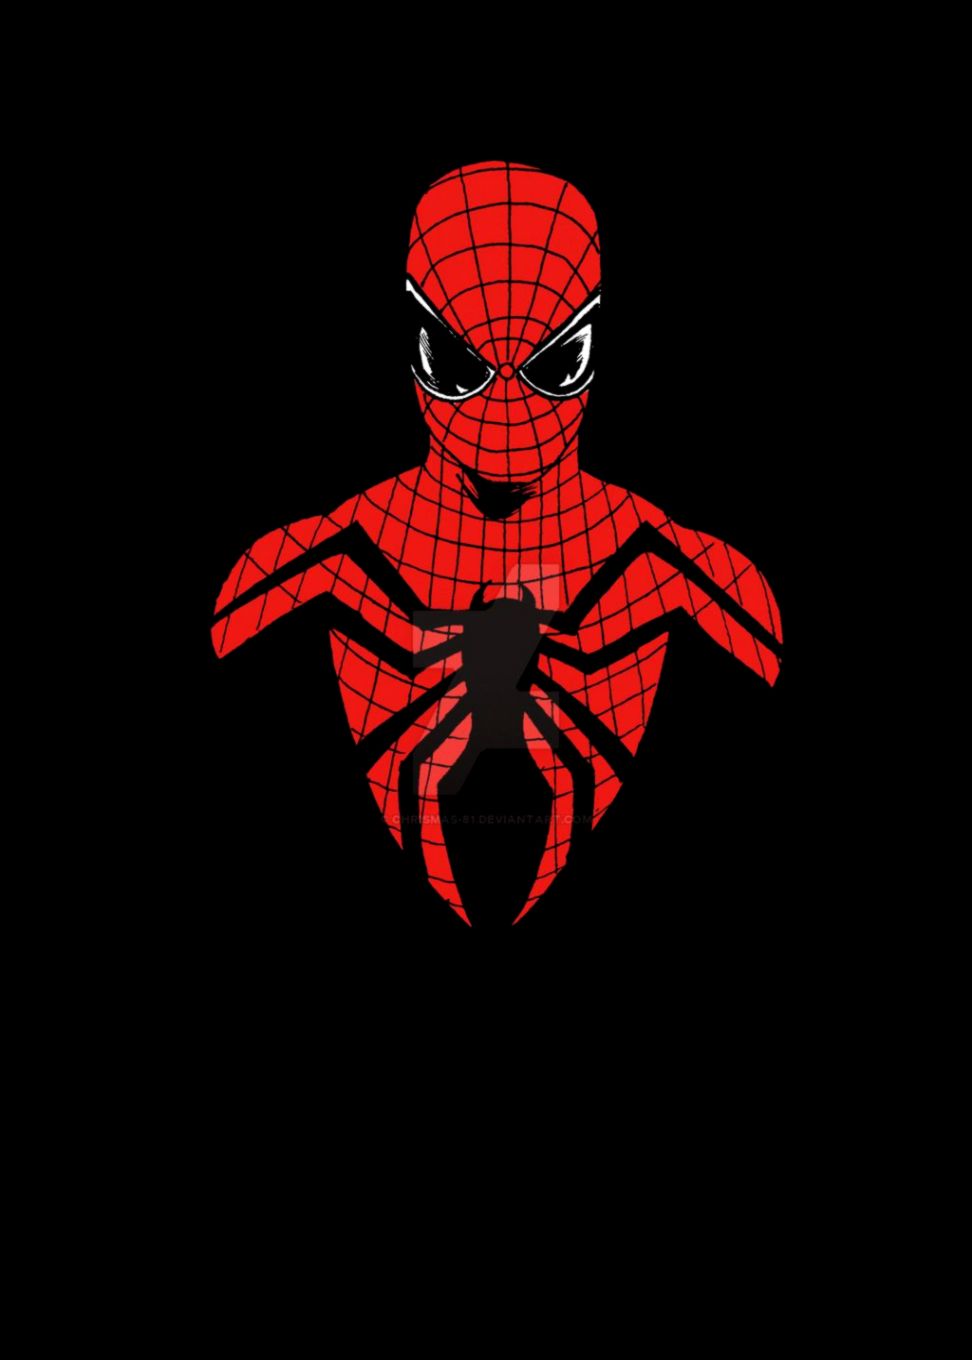 دانلود عکس گرافیکی مرد عنکبوتی با زمینه مشکی مخصوص پروفایل و تصویر زمینه 